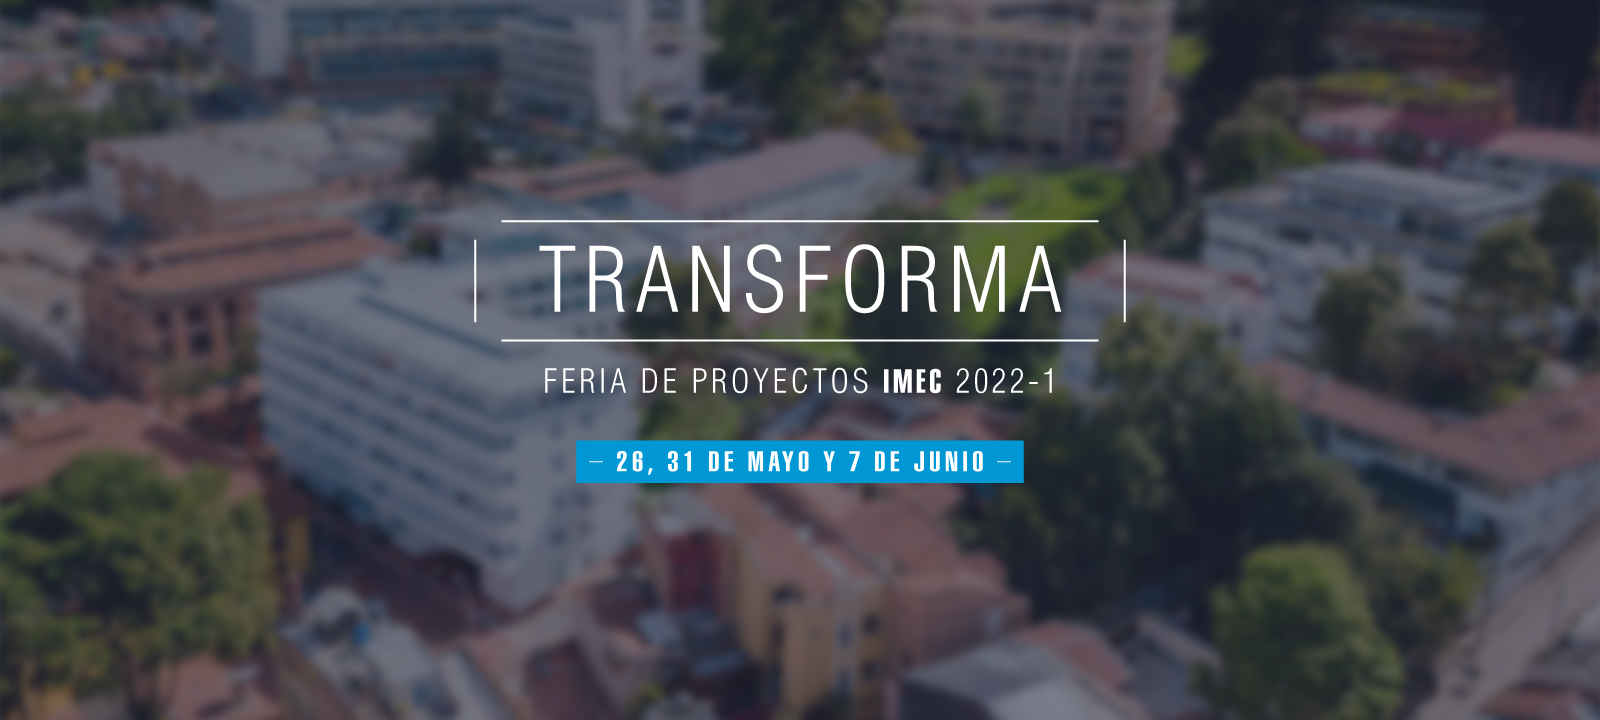 Transforma: Feria de proyectos 2022-1 Uniandes Ingeniería Mecánica